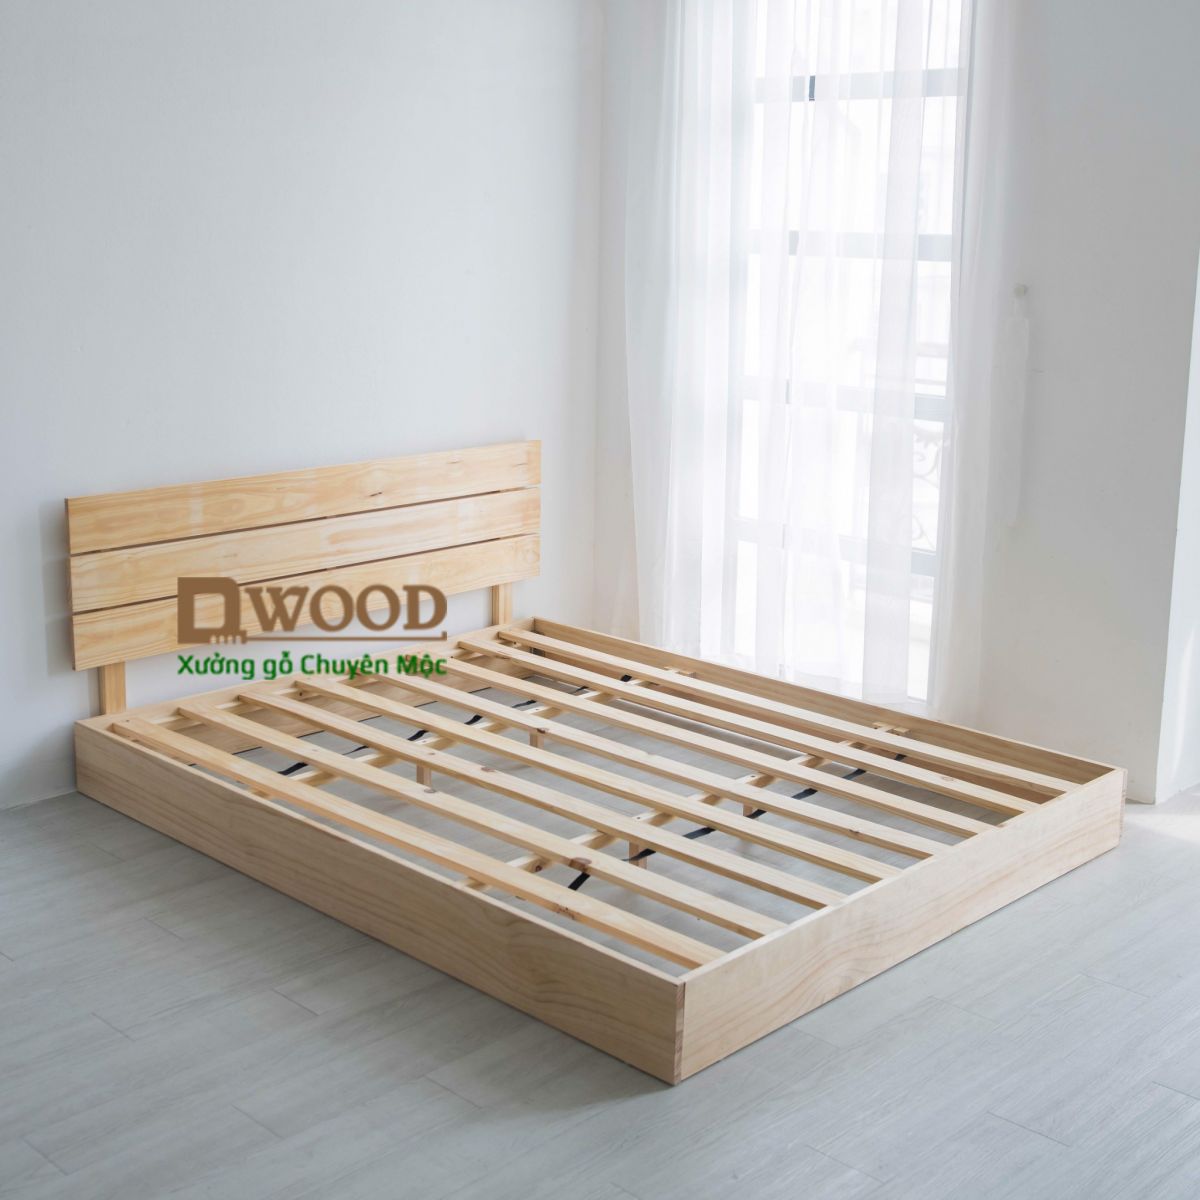 Giường ngủ gỗ thông Dwood hộp kín chắc chắn